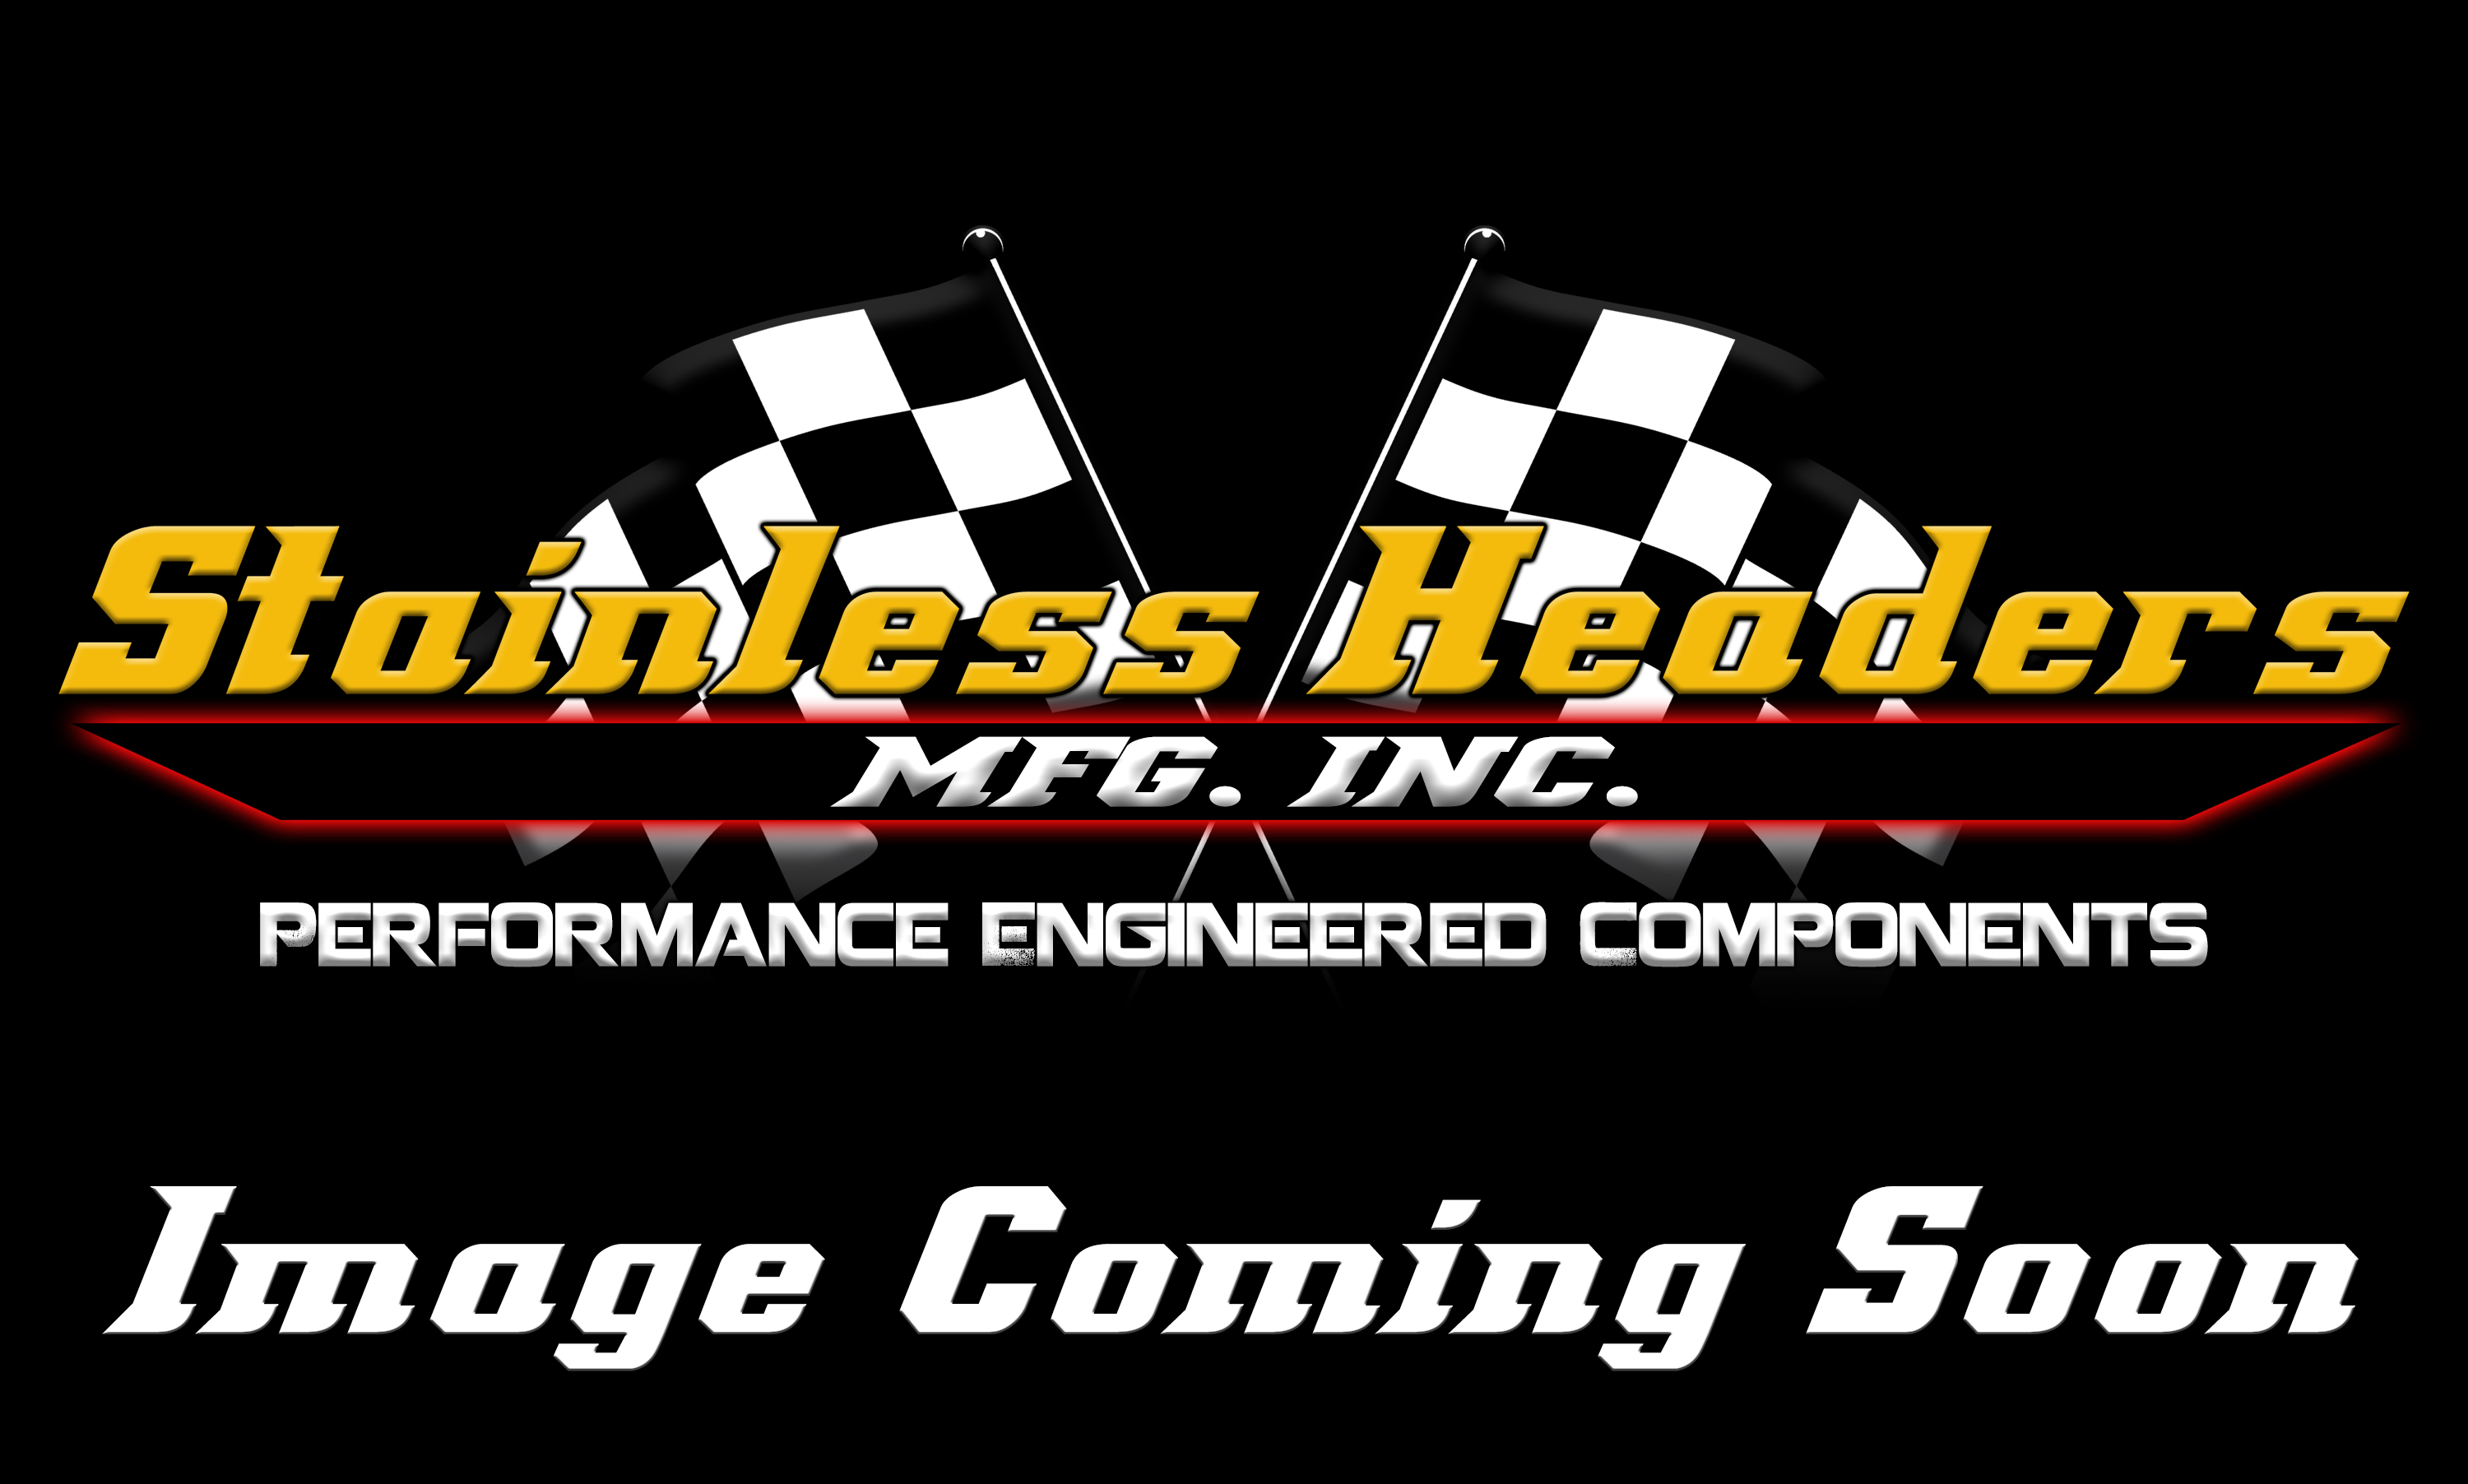 Stainless Headers - Chevrolet MBR 526 Hemi Head Stainless Header Flange